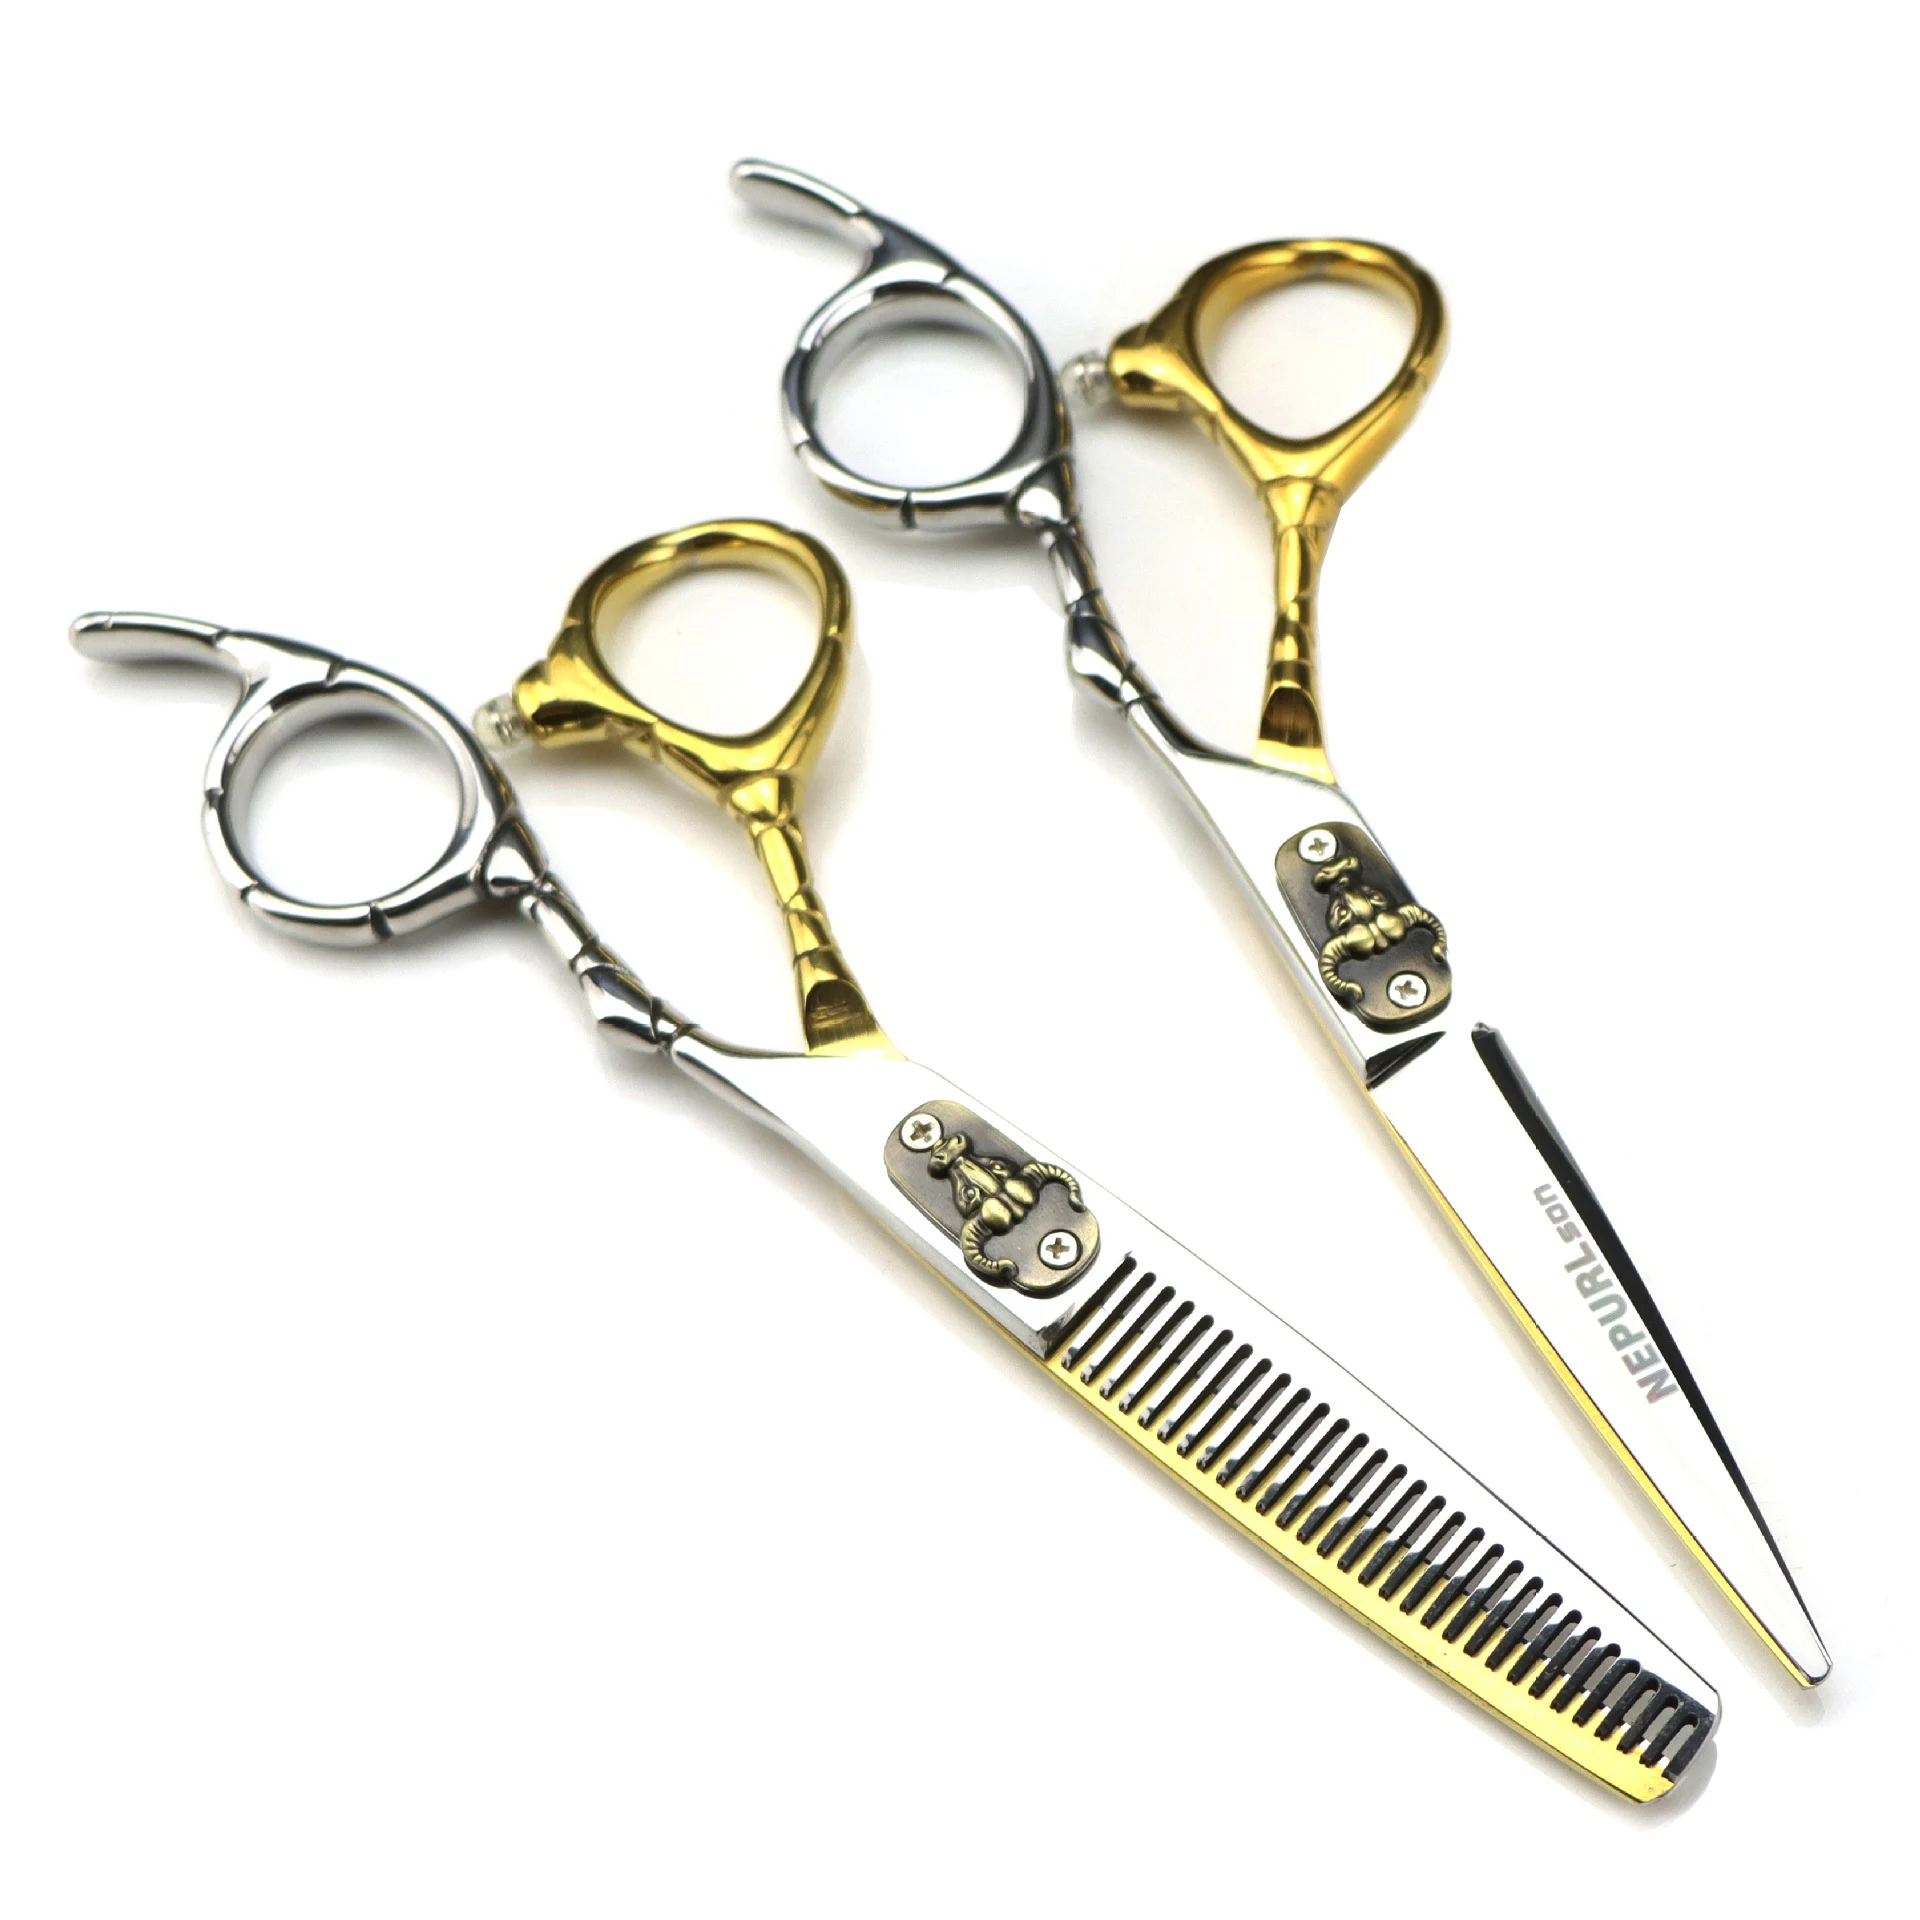 

Профессиональные ножницы для стрижки волос, набор из японских нержавеющих ножниц 6 дюймов для филировки, парикмахерские инструменты для ук...